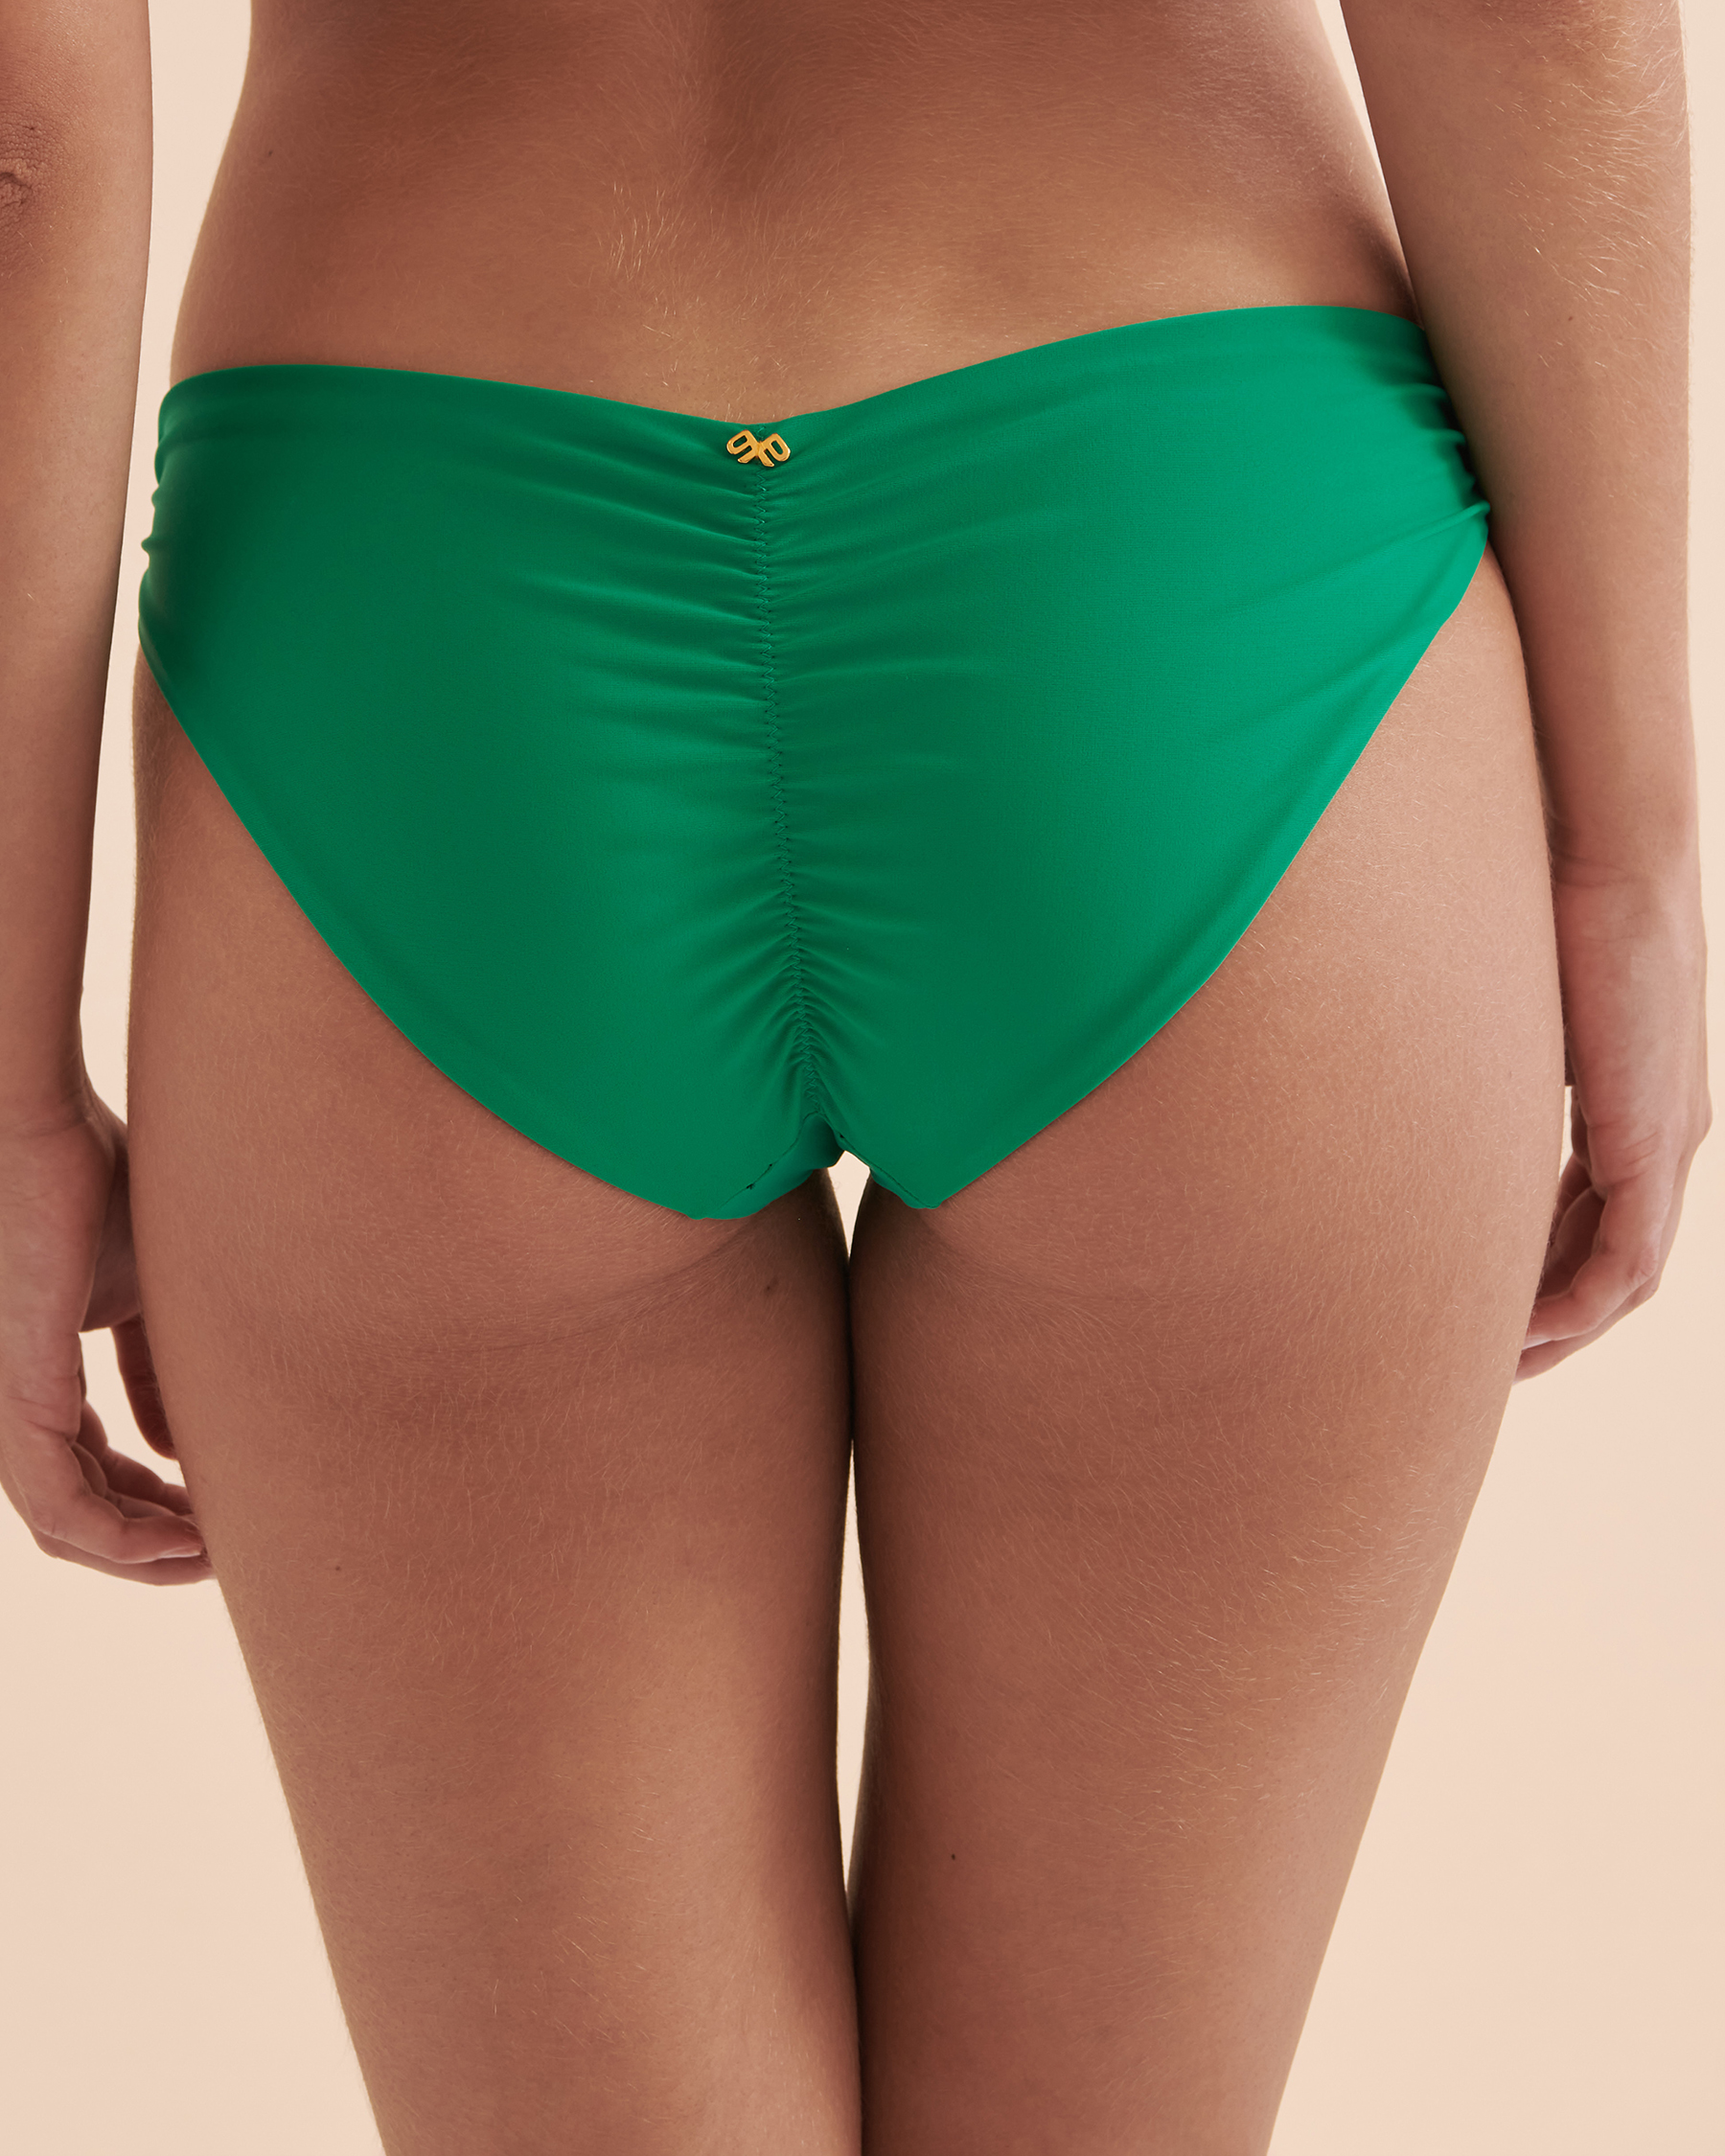 PQ Swim Ireland Green Ruched Bikini Bottom Green IRE-211F - View2